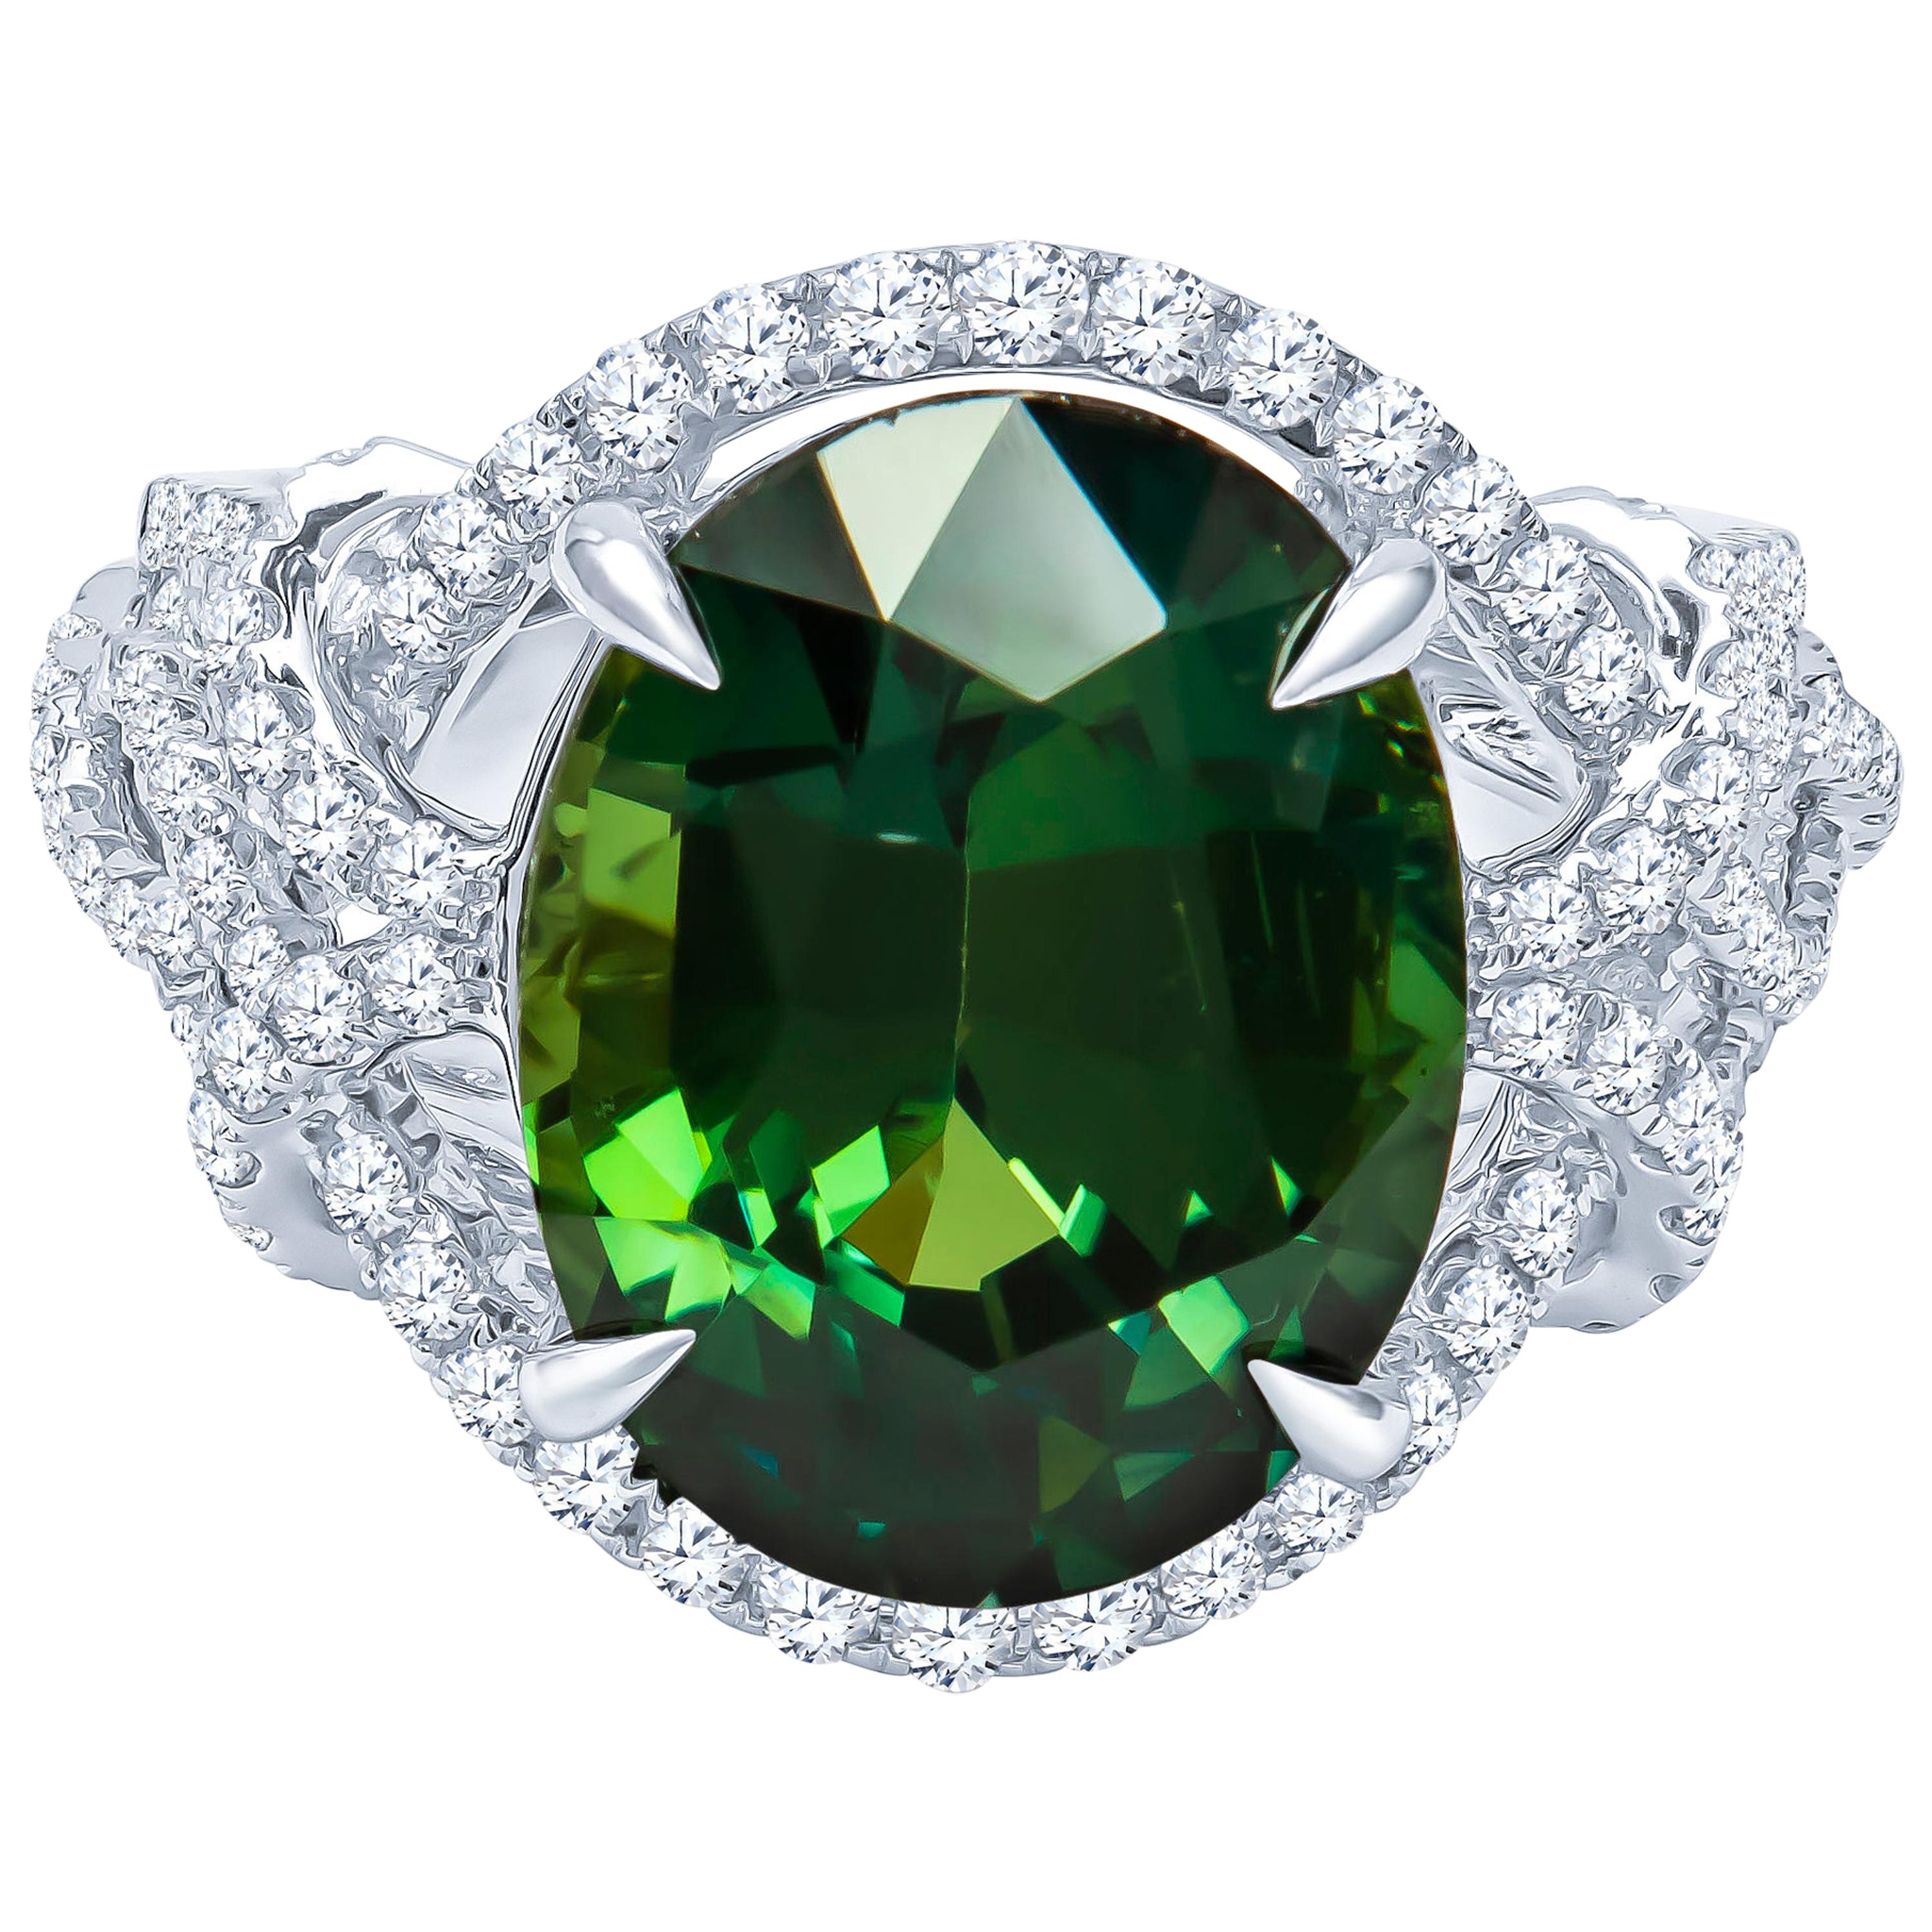 11,18 Karat natürlicher grüner Saphir im Ovalschliff 'GRS' in einem 0,80 Karat Diamantring